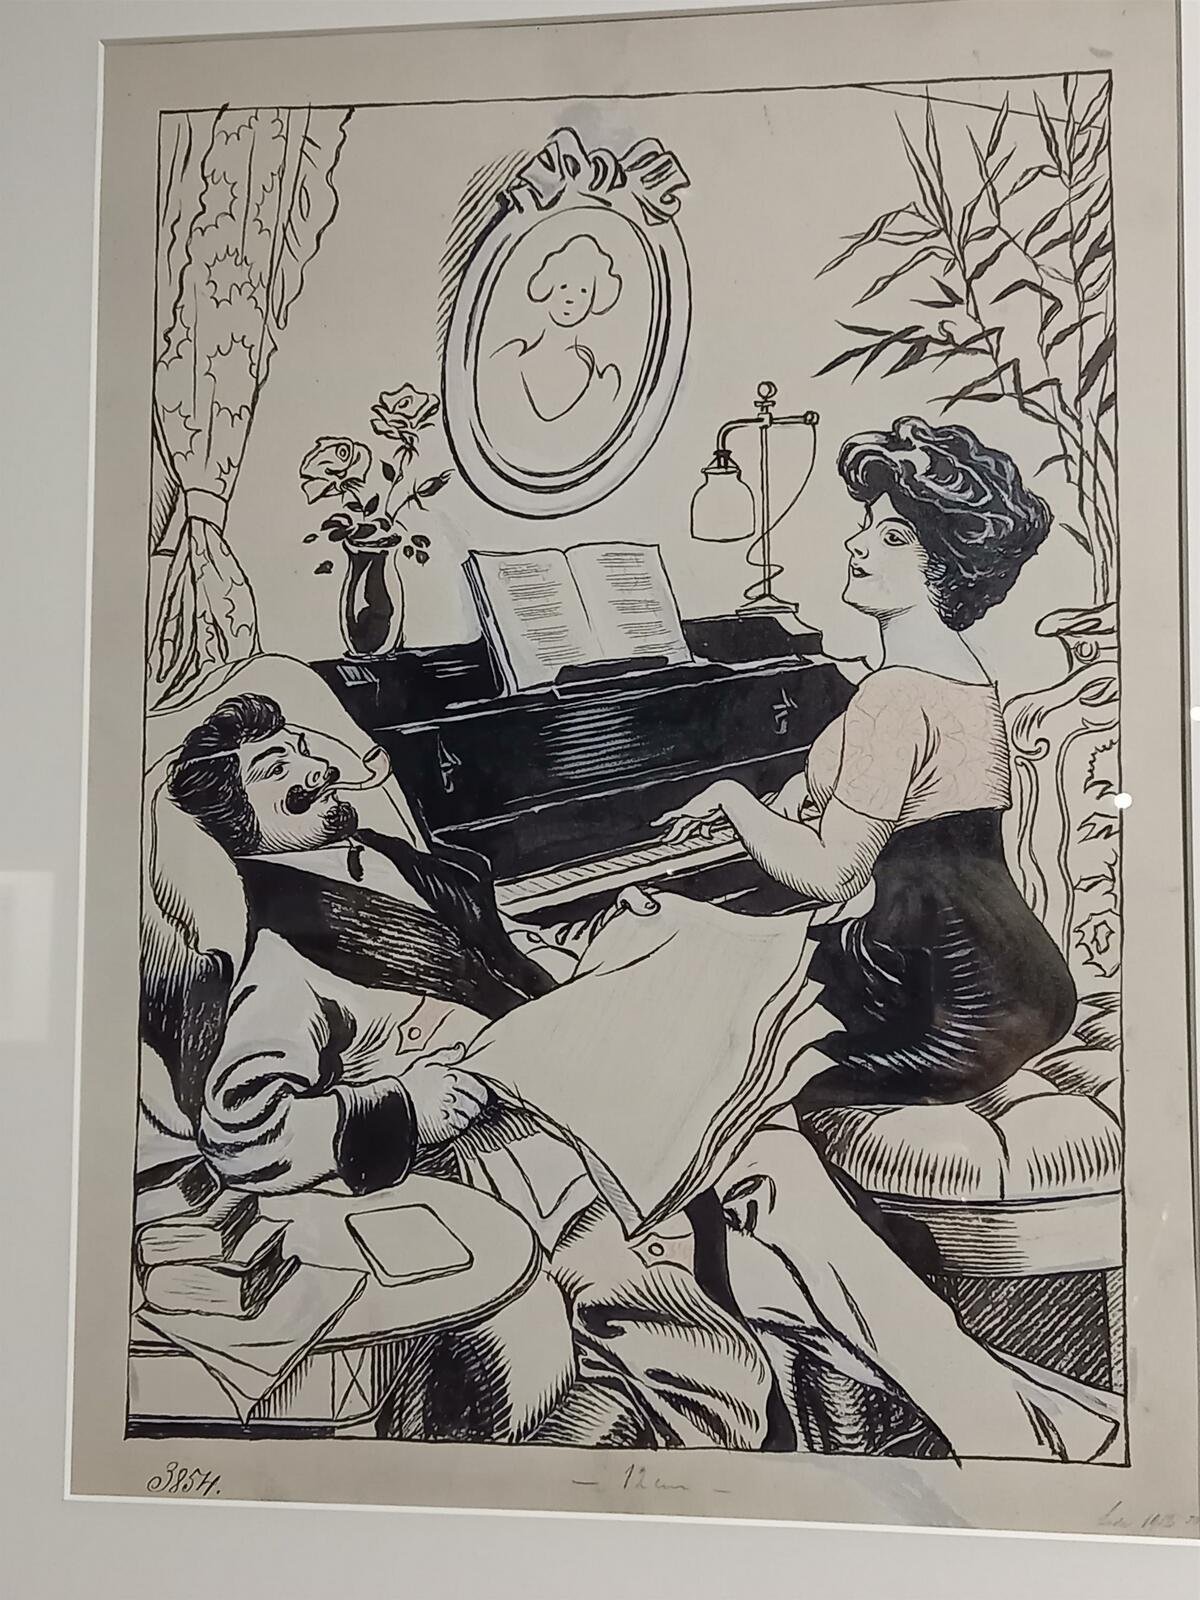 Ladova raná práce se ženou hrající na klavír pro Humoristické listy.